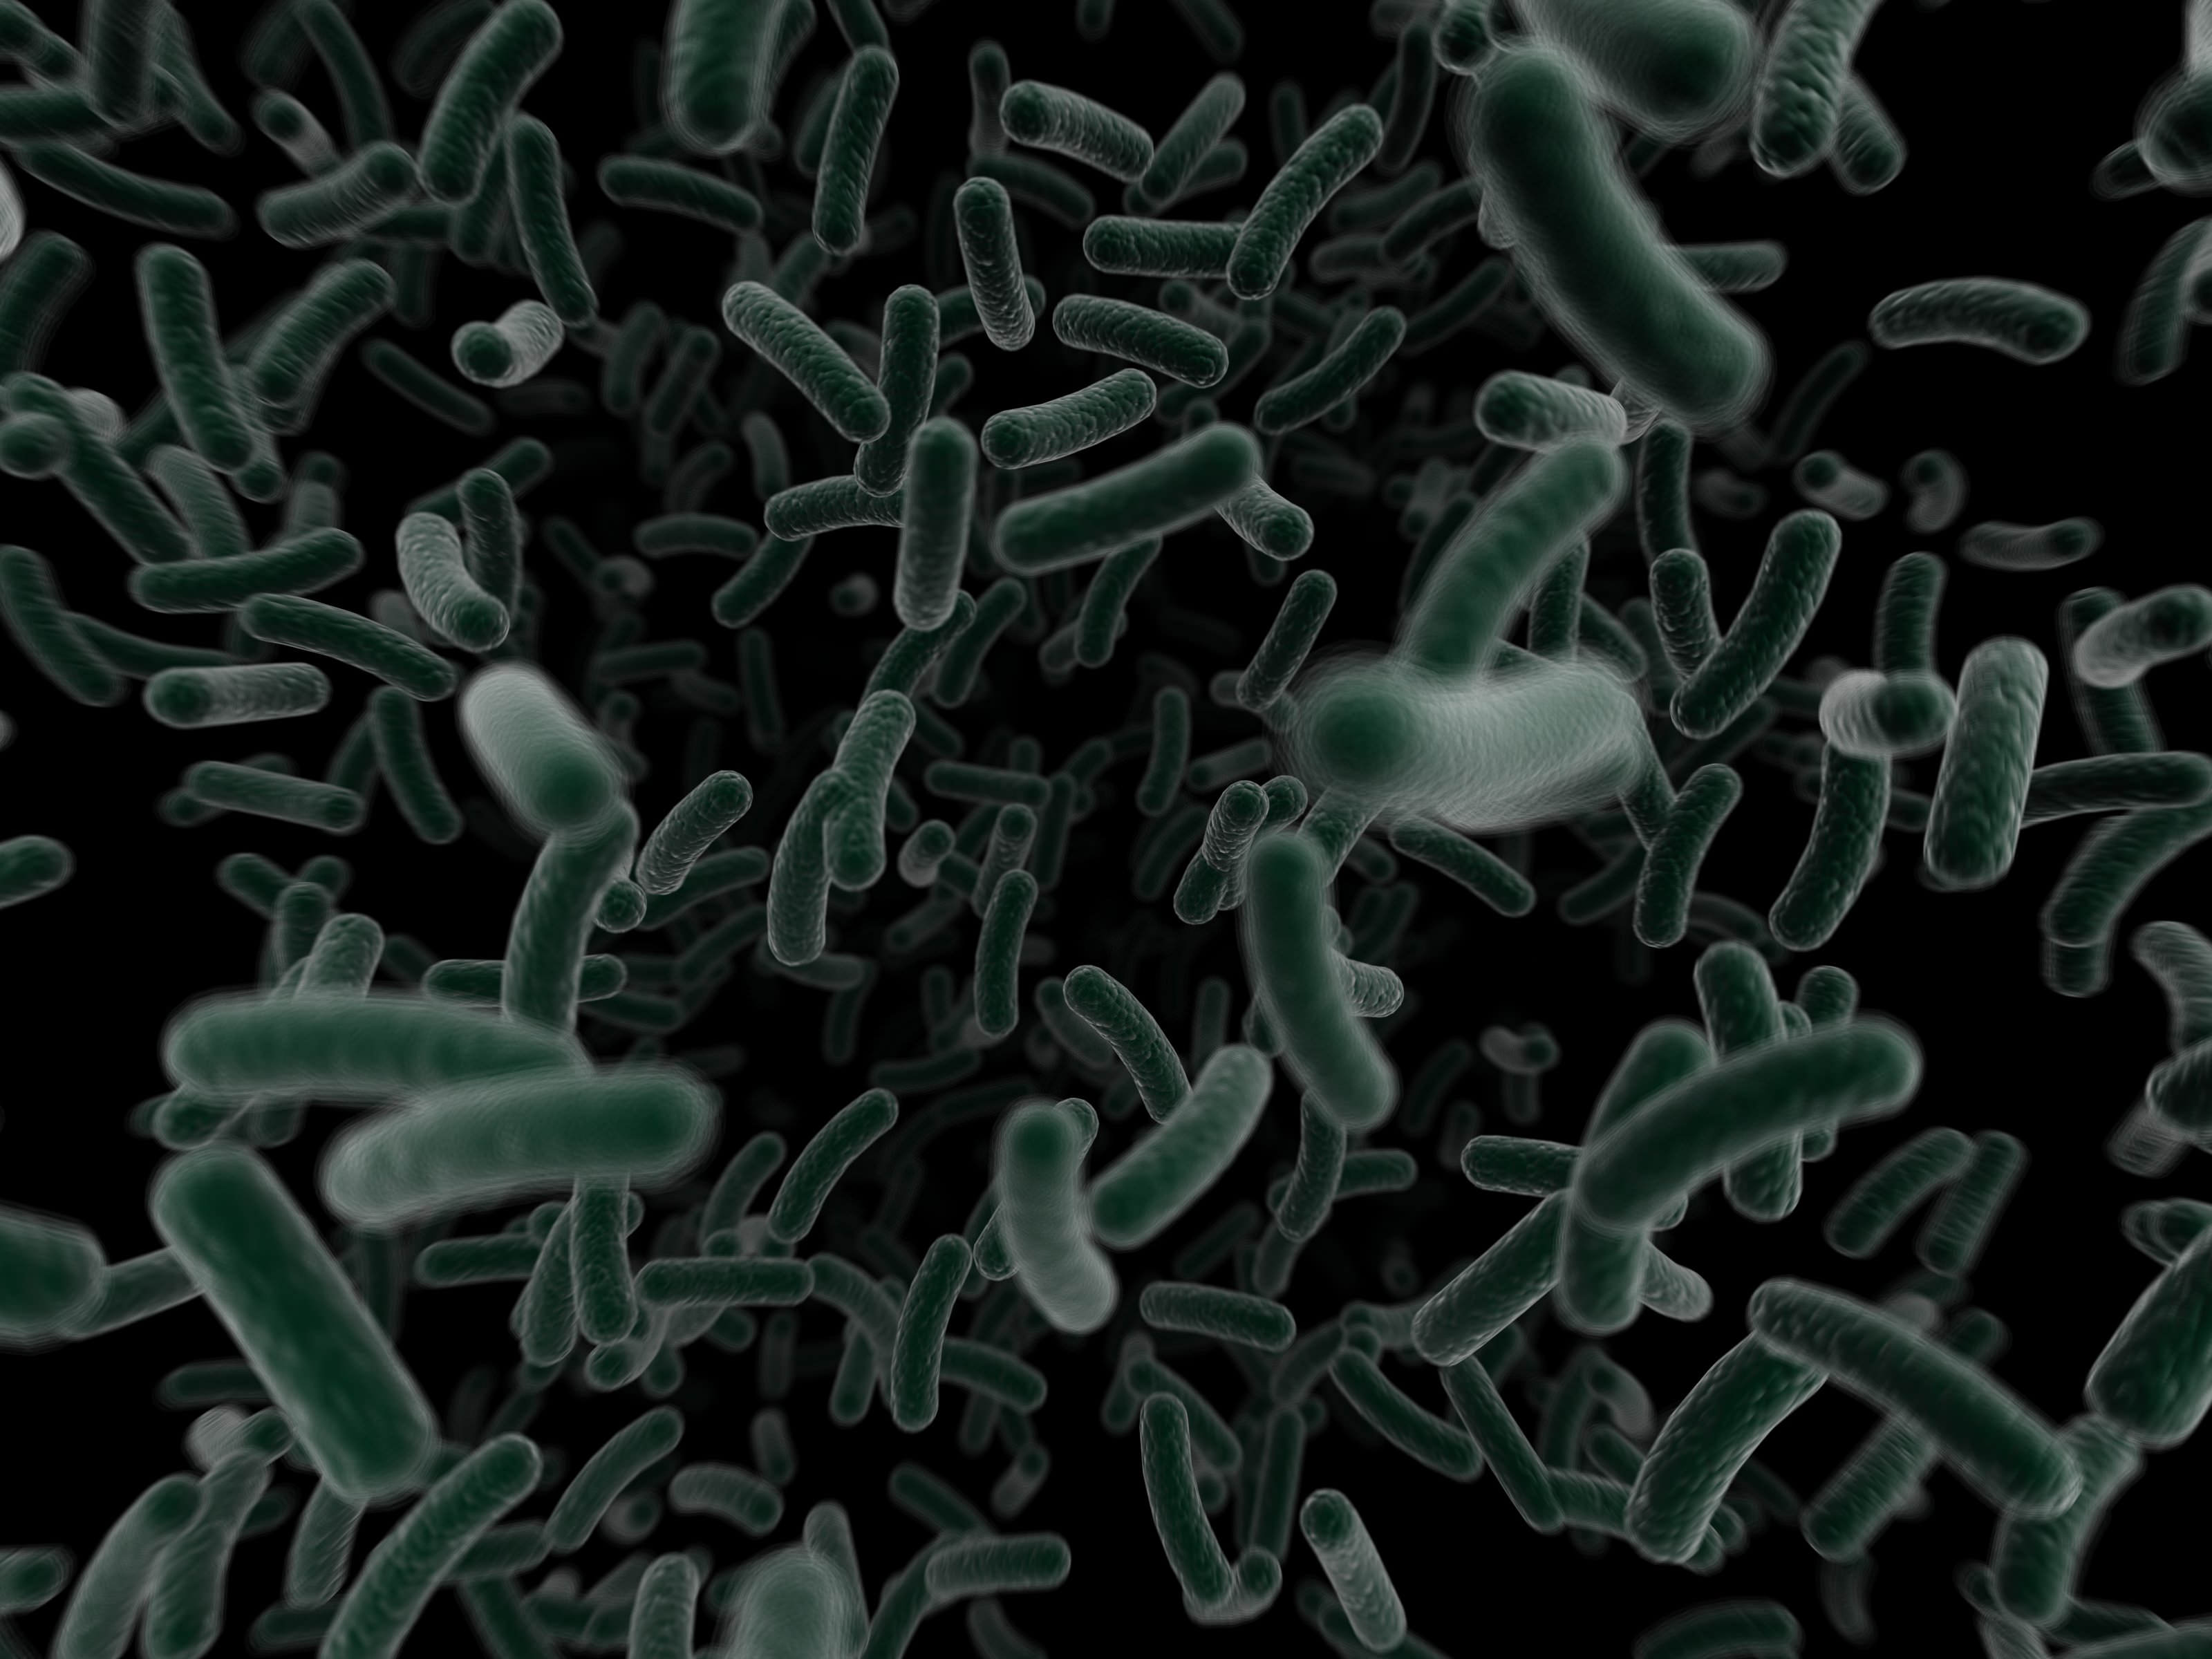 Чем можно объяснить широкое распространение бактерий